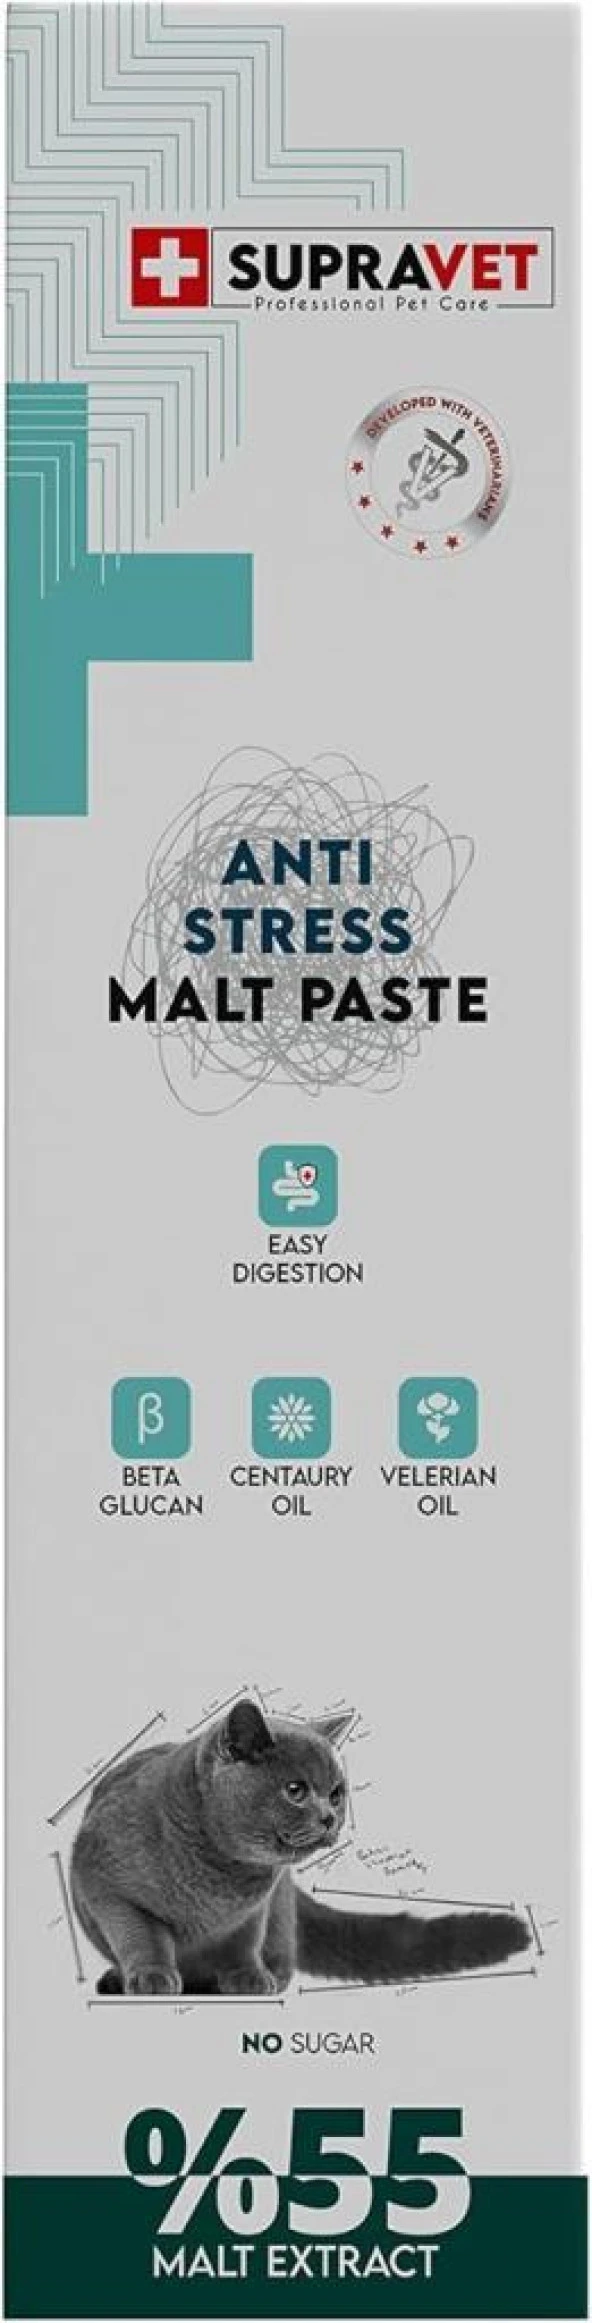 Supravet Anti Stress Malt Paste 100 Gr.